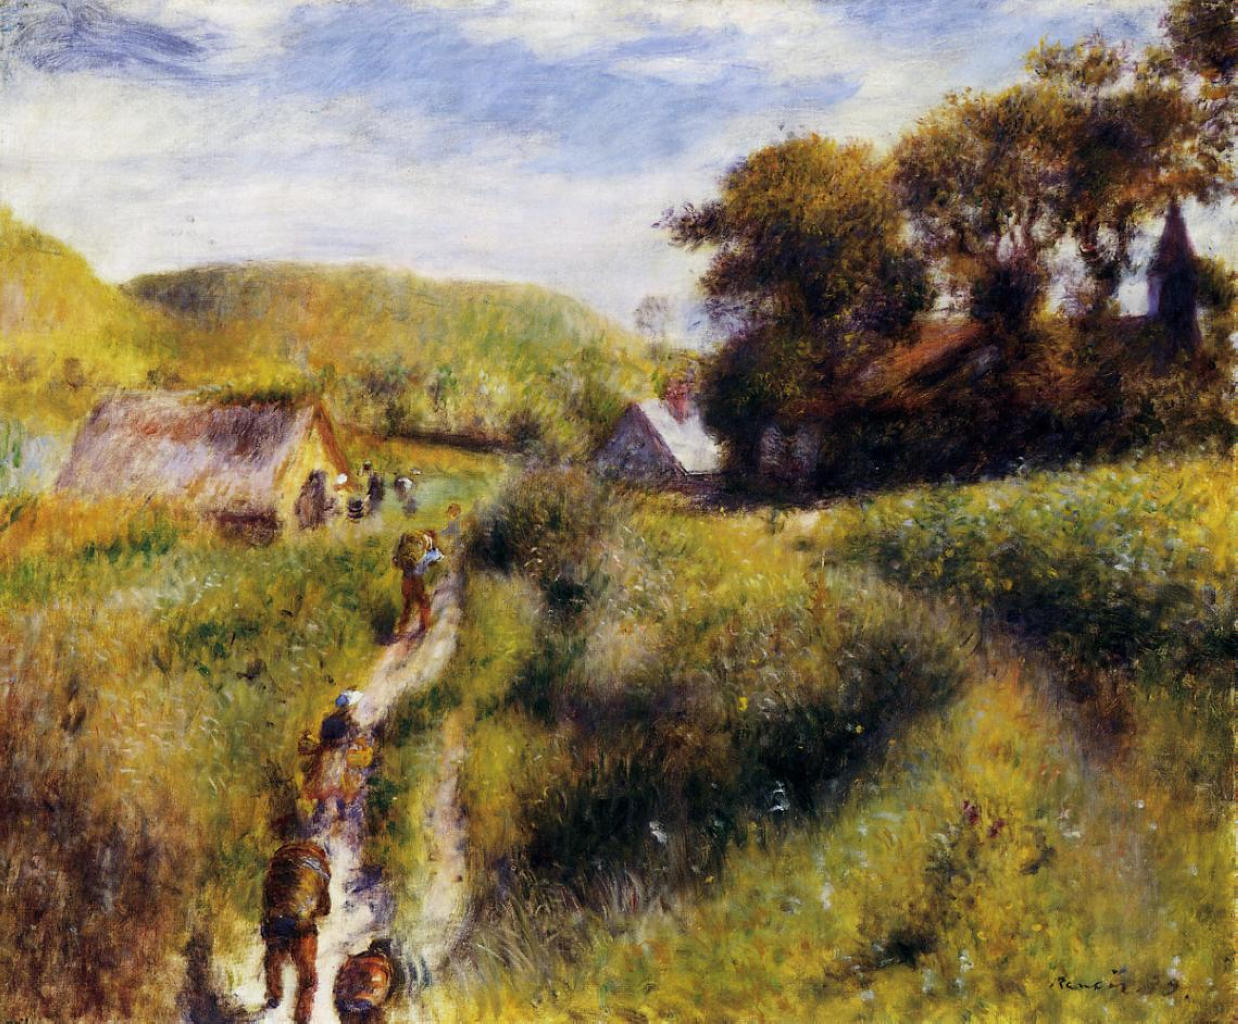 Pierre+Auguste+Renoir-1841-1-19 (498).jpg